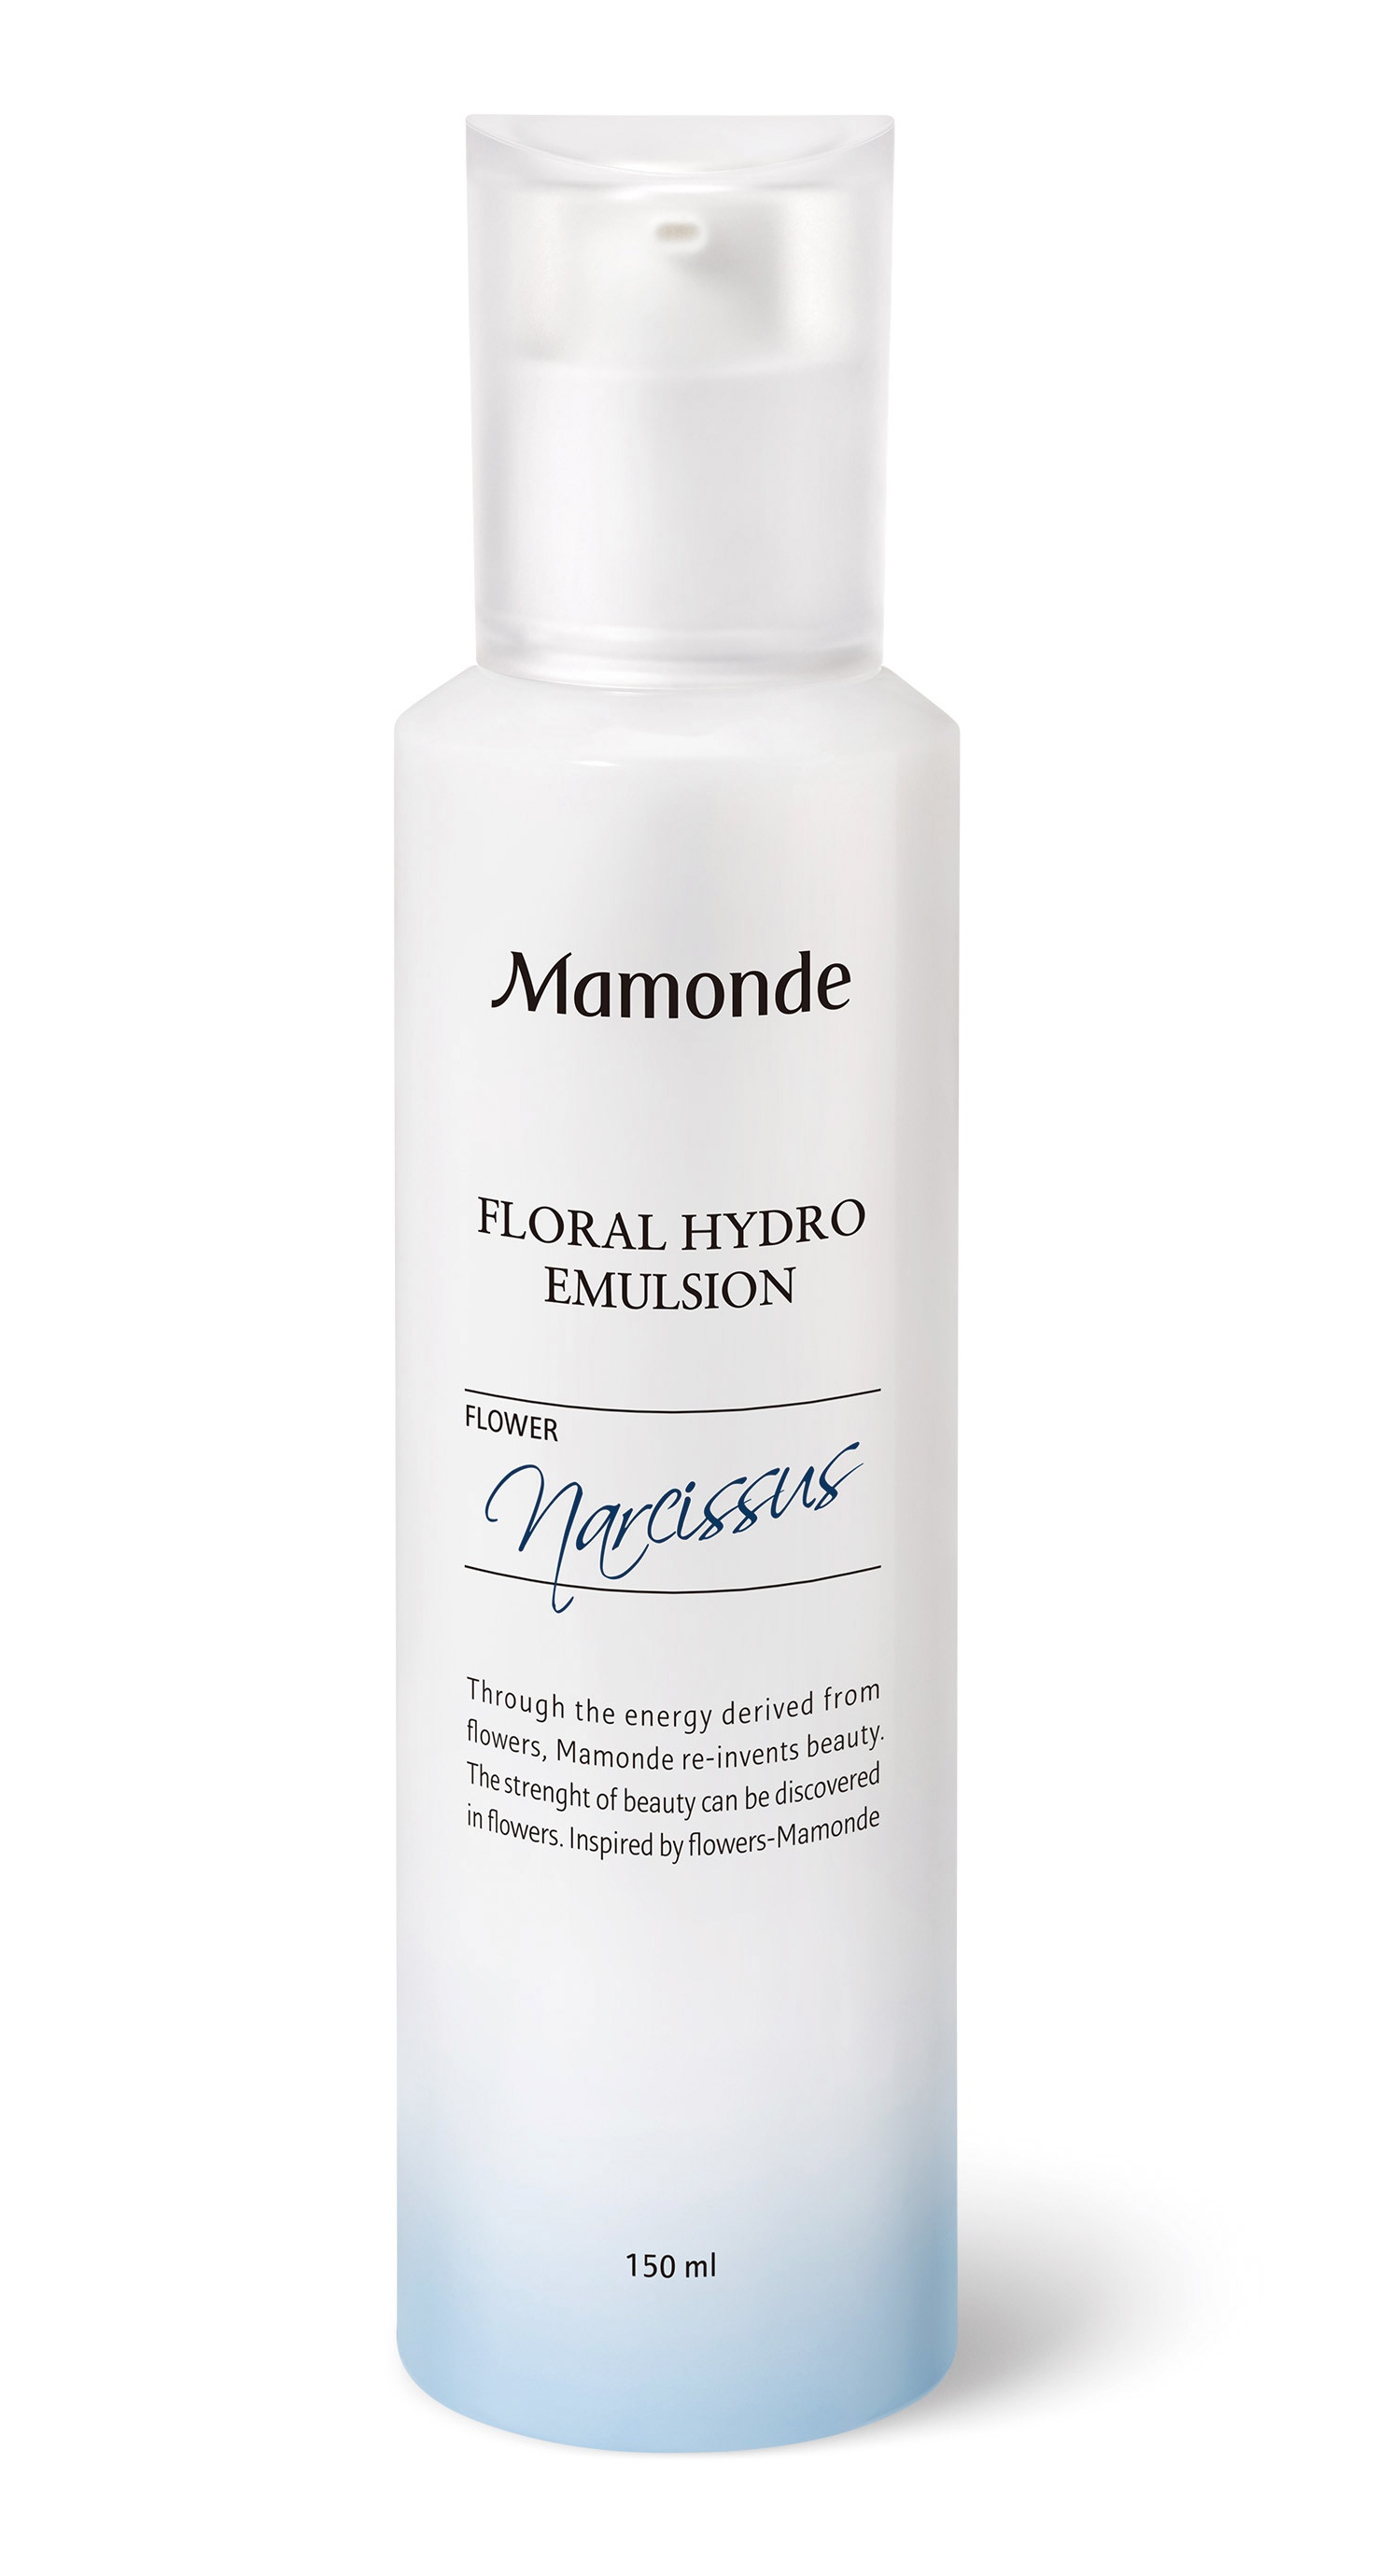 Mamonde Floral Hydro Emulsion